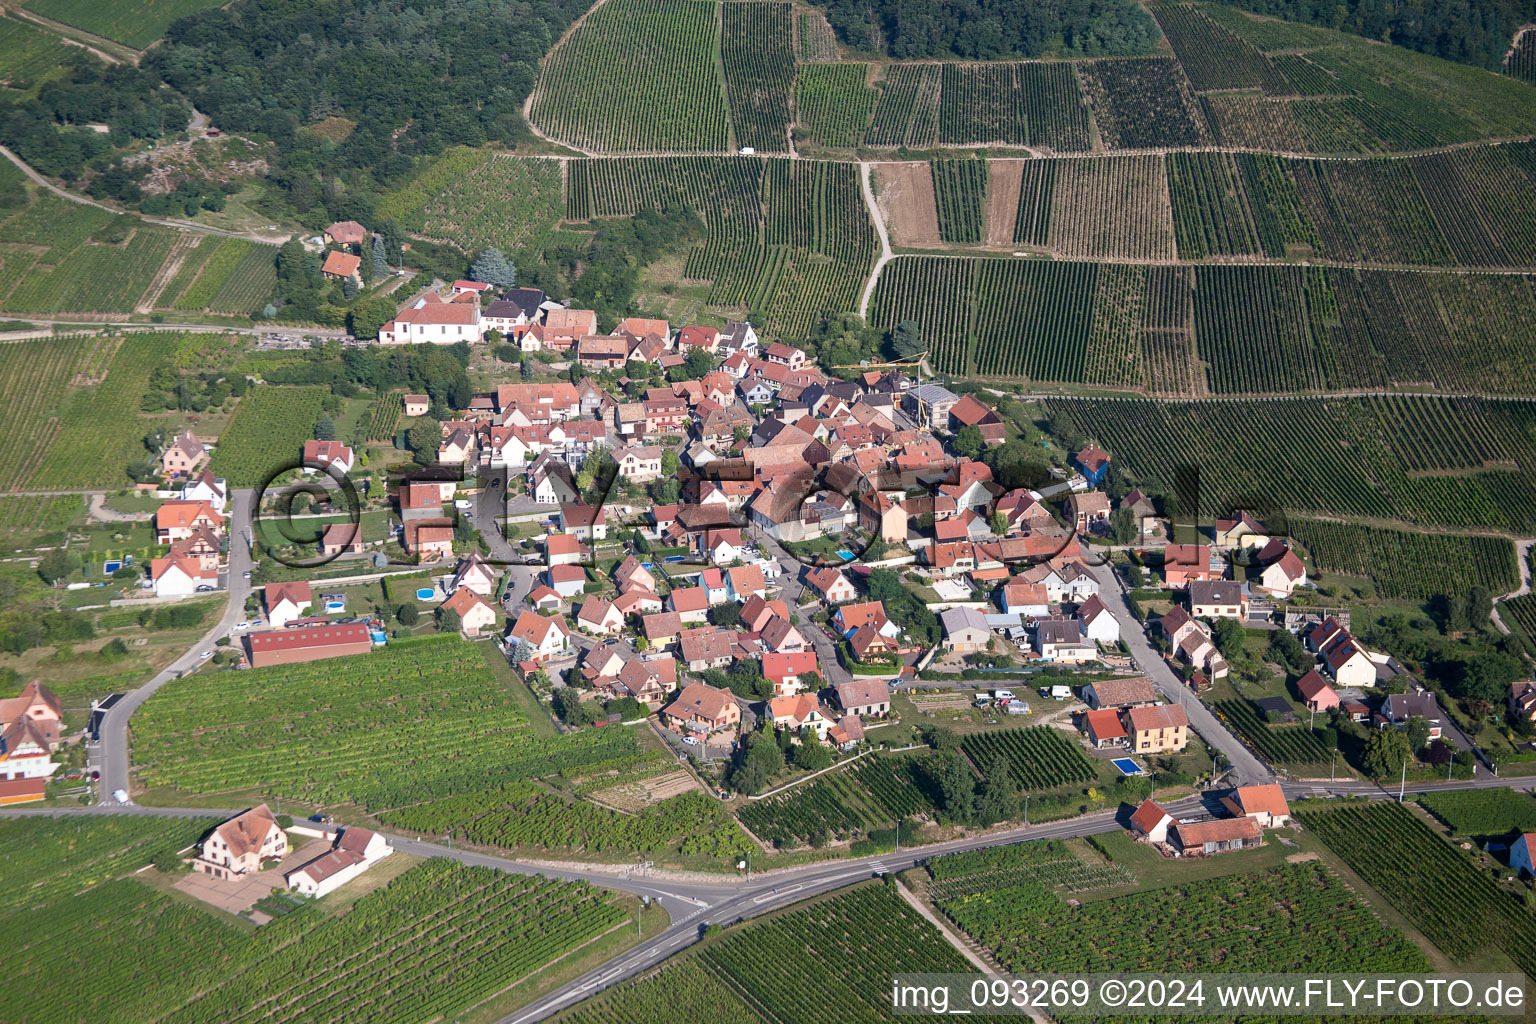 Luftaufnahme von Dorf - Ansicht am Rande von landwirtschaftlichen Feldern und Nutzflächen in Dieffenthal in Grand Est im Bundesland Bas-Rhin, Frankreich